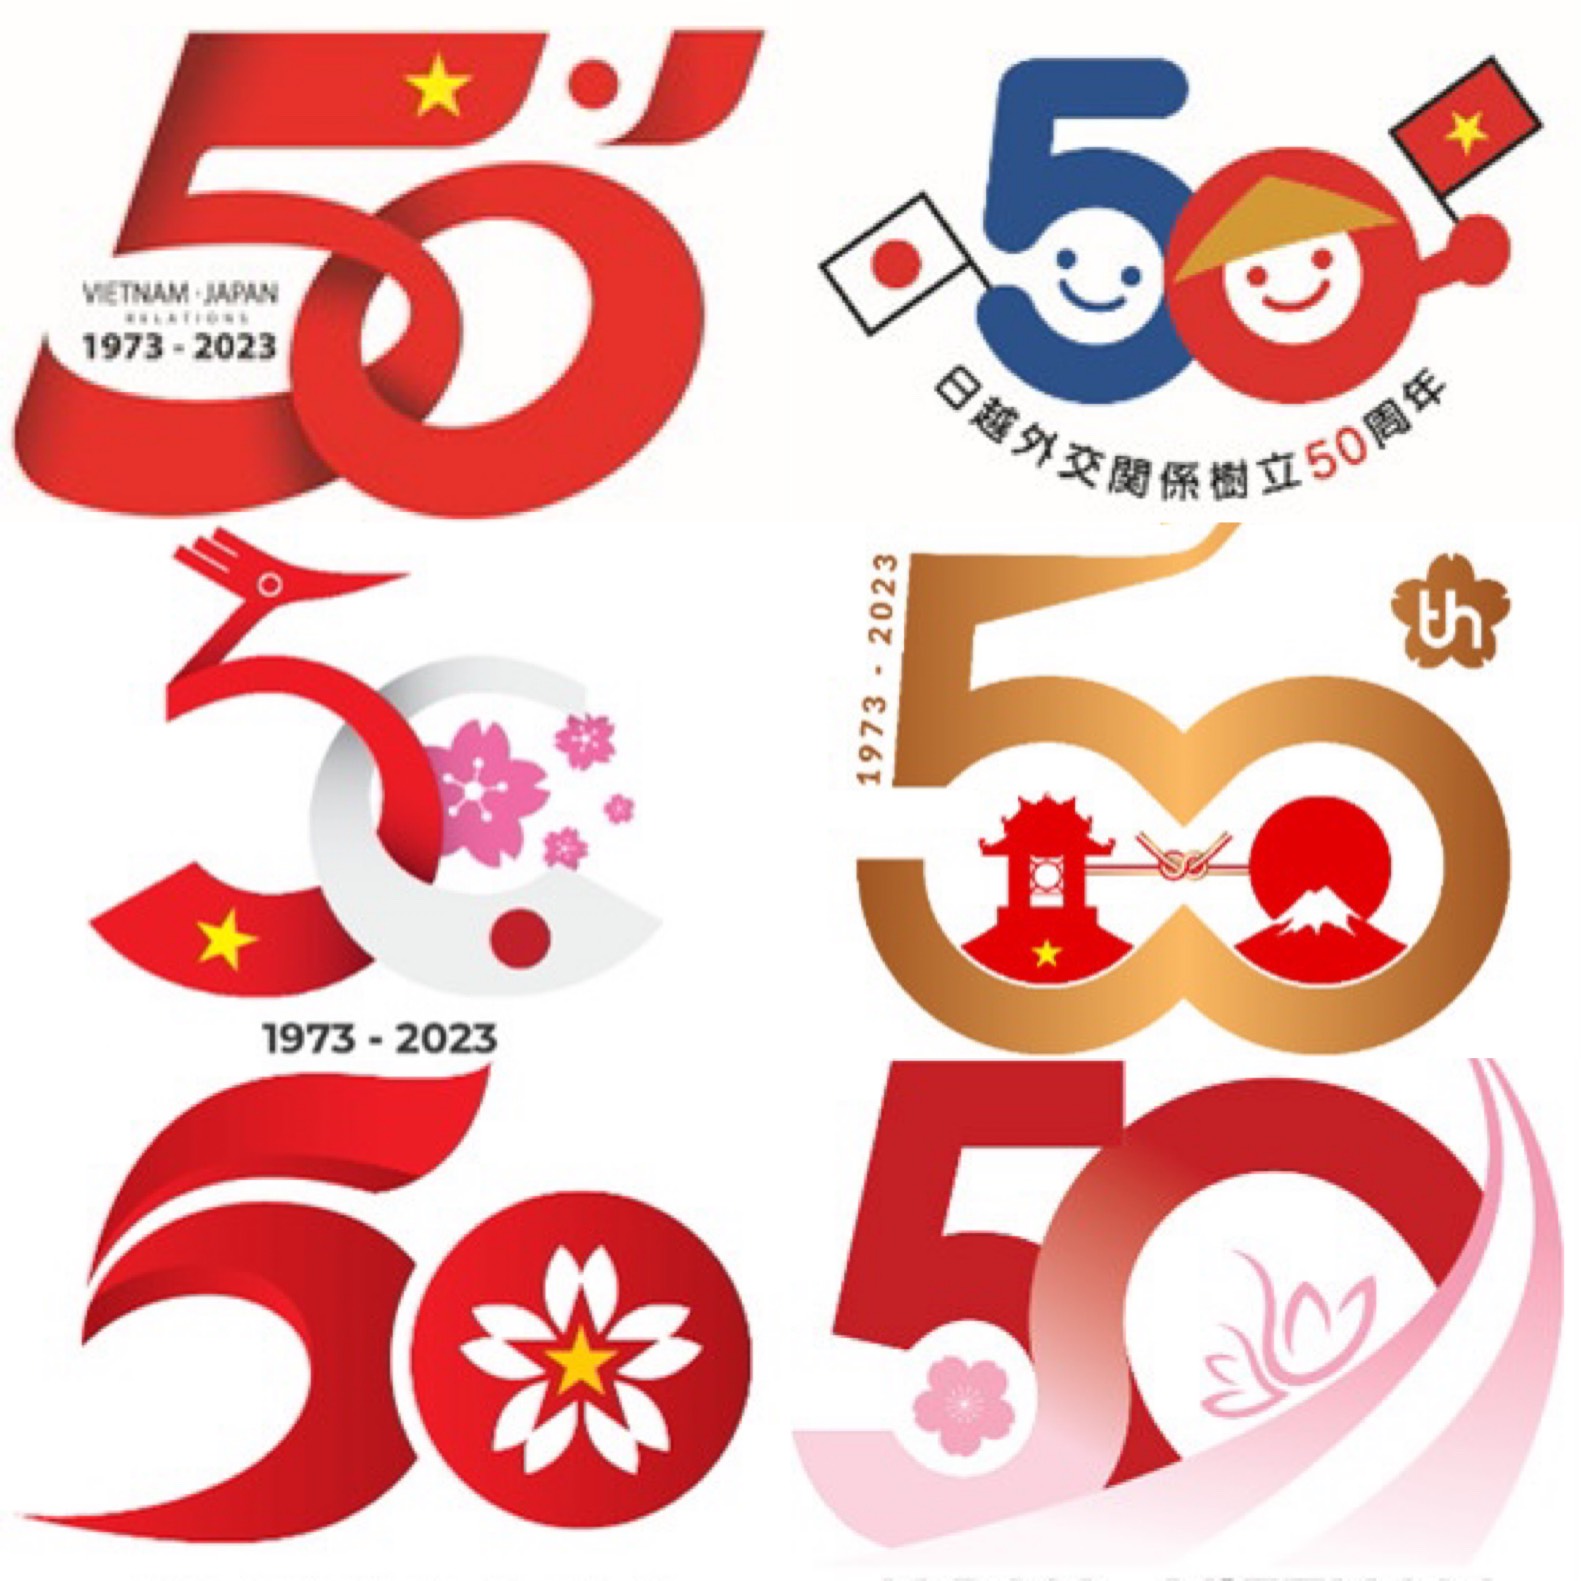 Bình chọn thiết kế logo kỷ niệm 50 năm quan hệ ngoại giao Nhật Bản ...